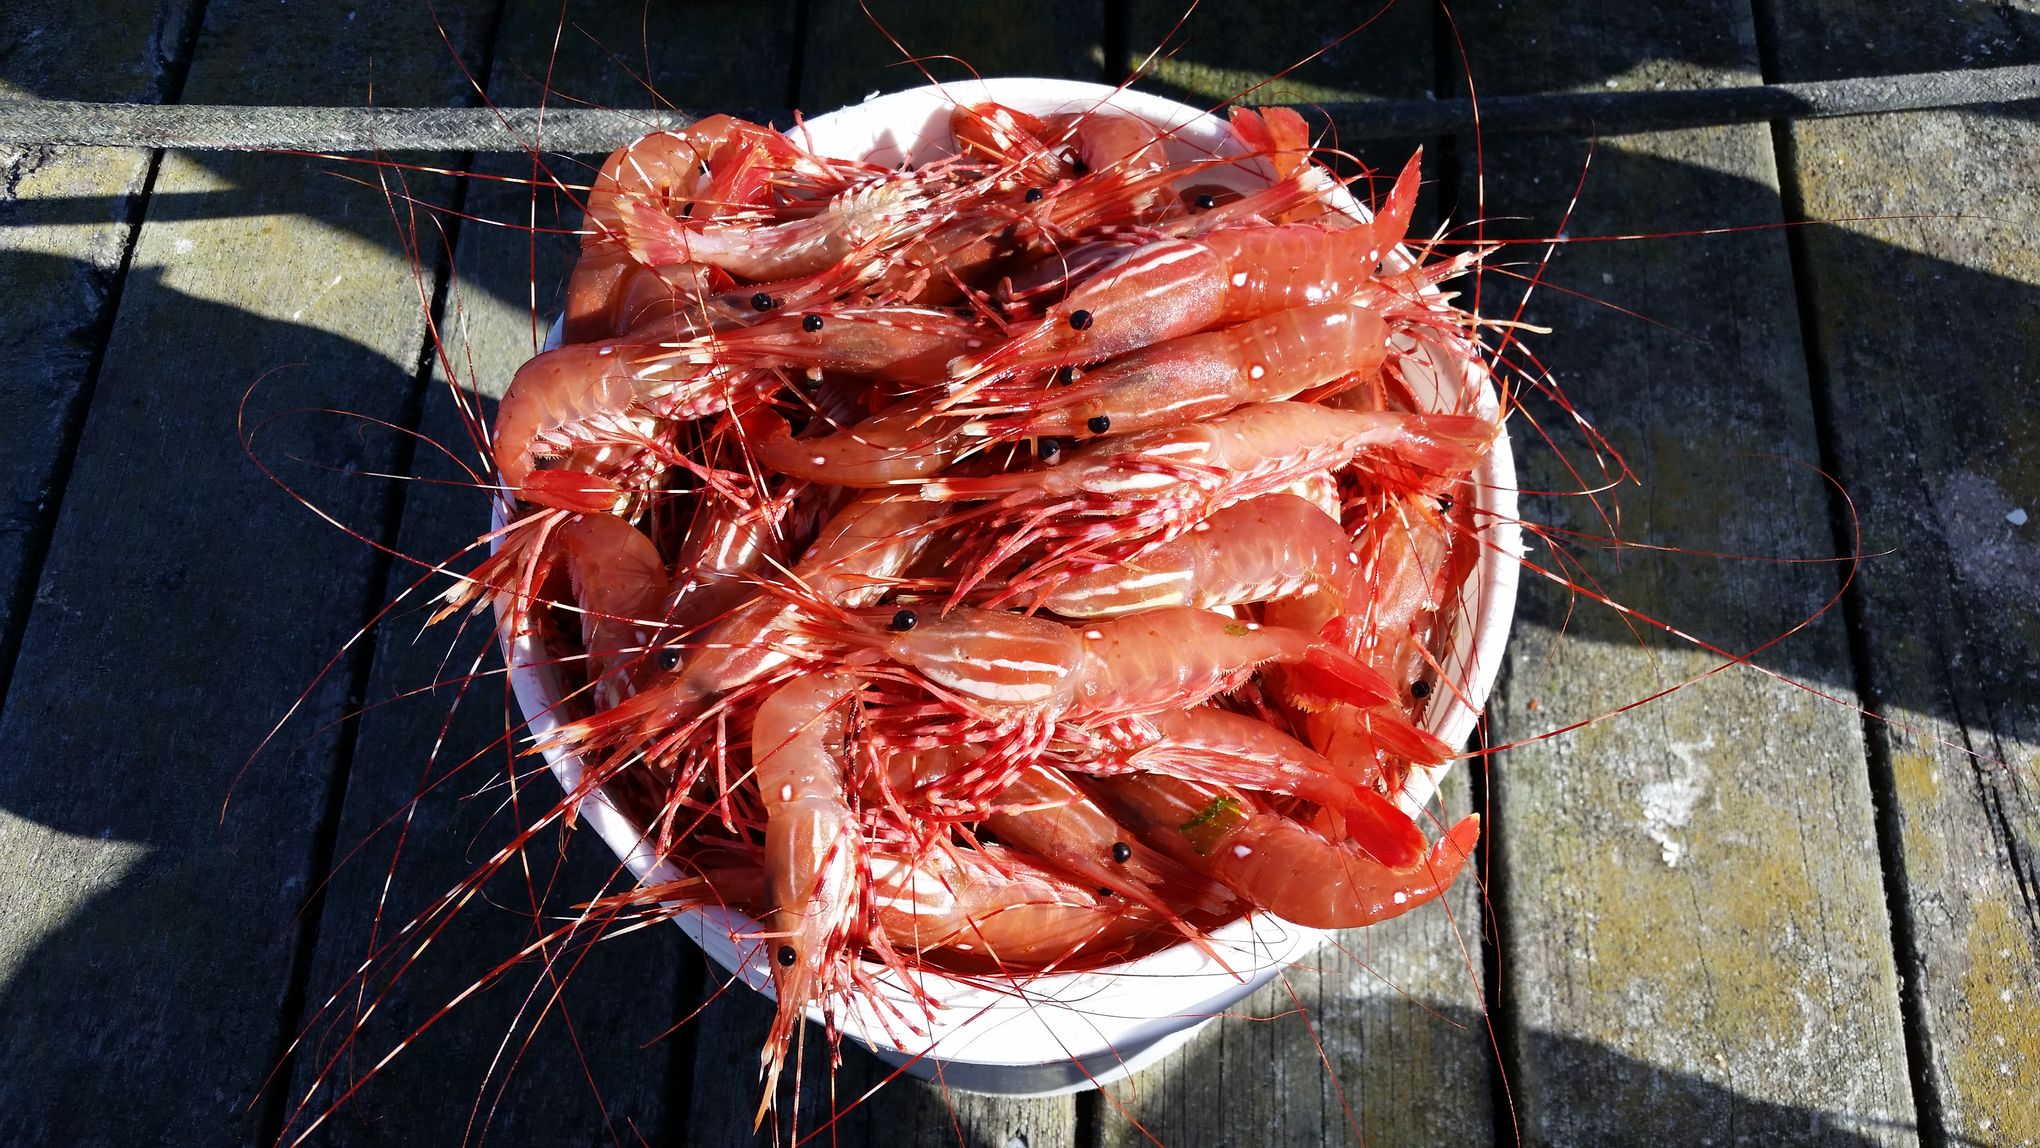 Tony Floor's Tackle Box in May has bucket full of spot shrimp and